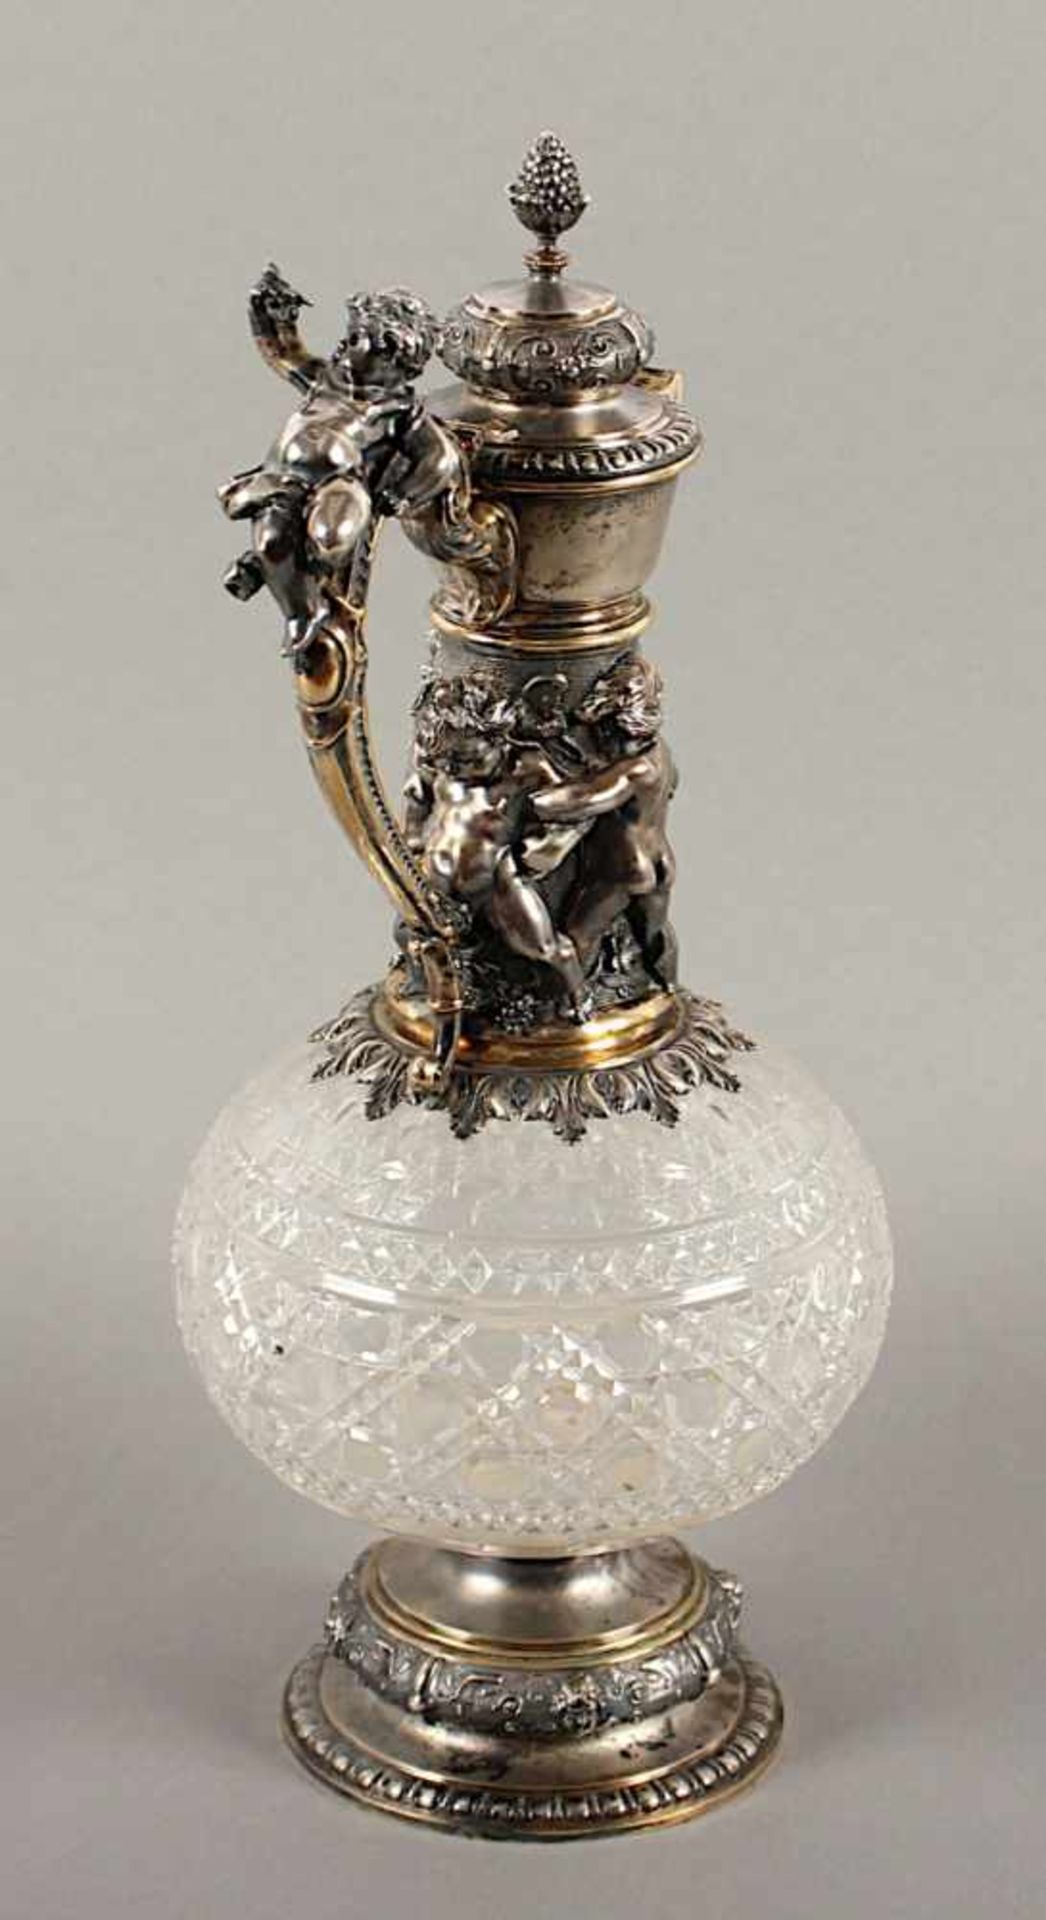 HISTORISMUS-KARAFFE, farbloses Glas mit Zierschliff, Montierung 800/ooo, partiell vergoldet, - Image 2 of 3